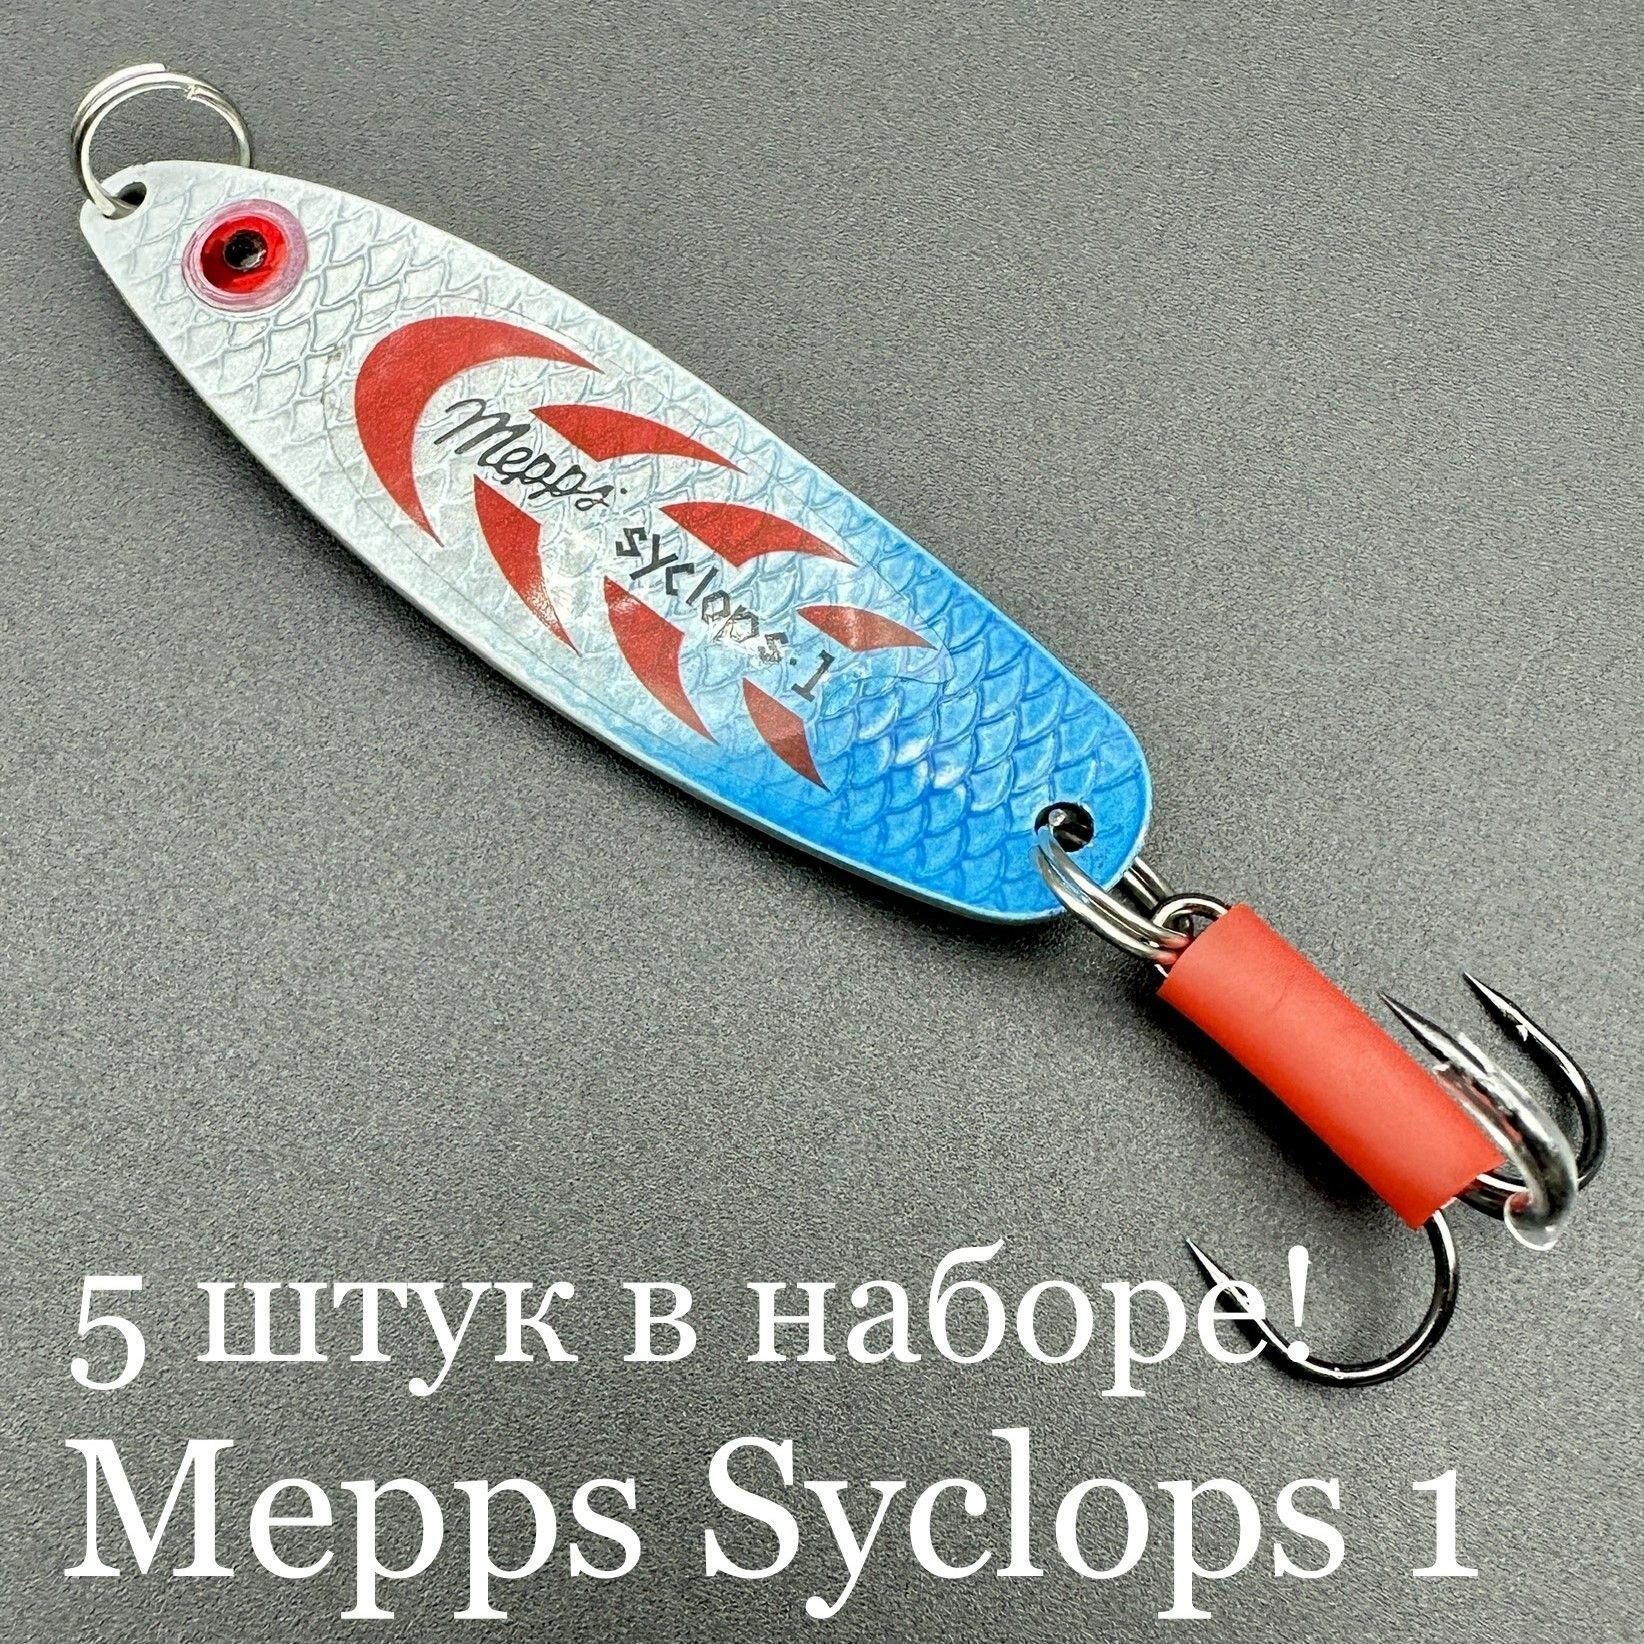 Набор из 5 блесен Mepps Syclops 1 17 грамм колебалок для рыбалки на хищника окунь, щука, судак берш сом, сазан, кумжа, семга, лосось